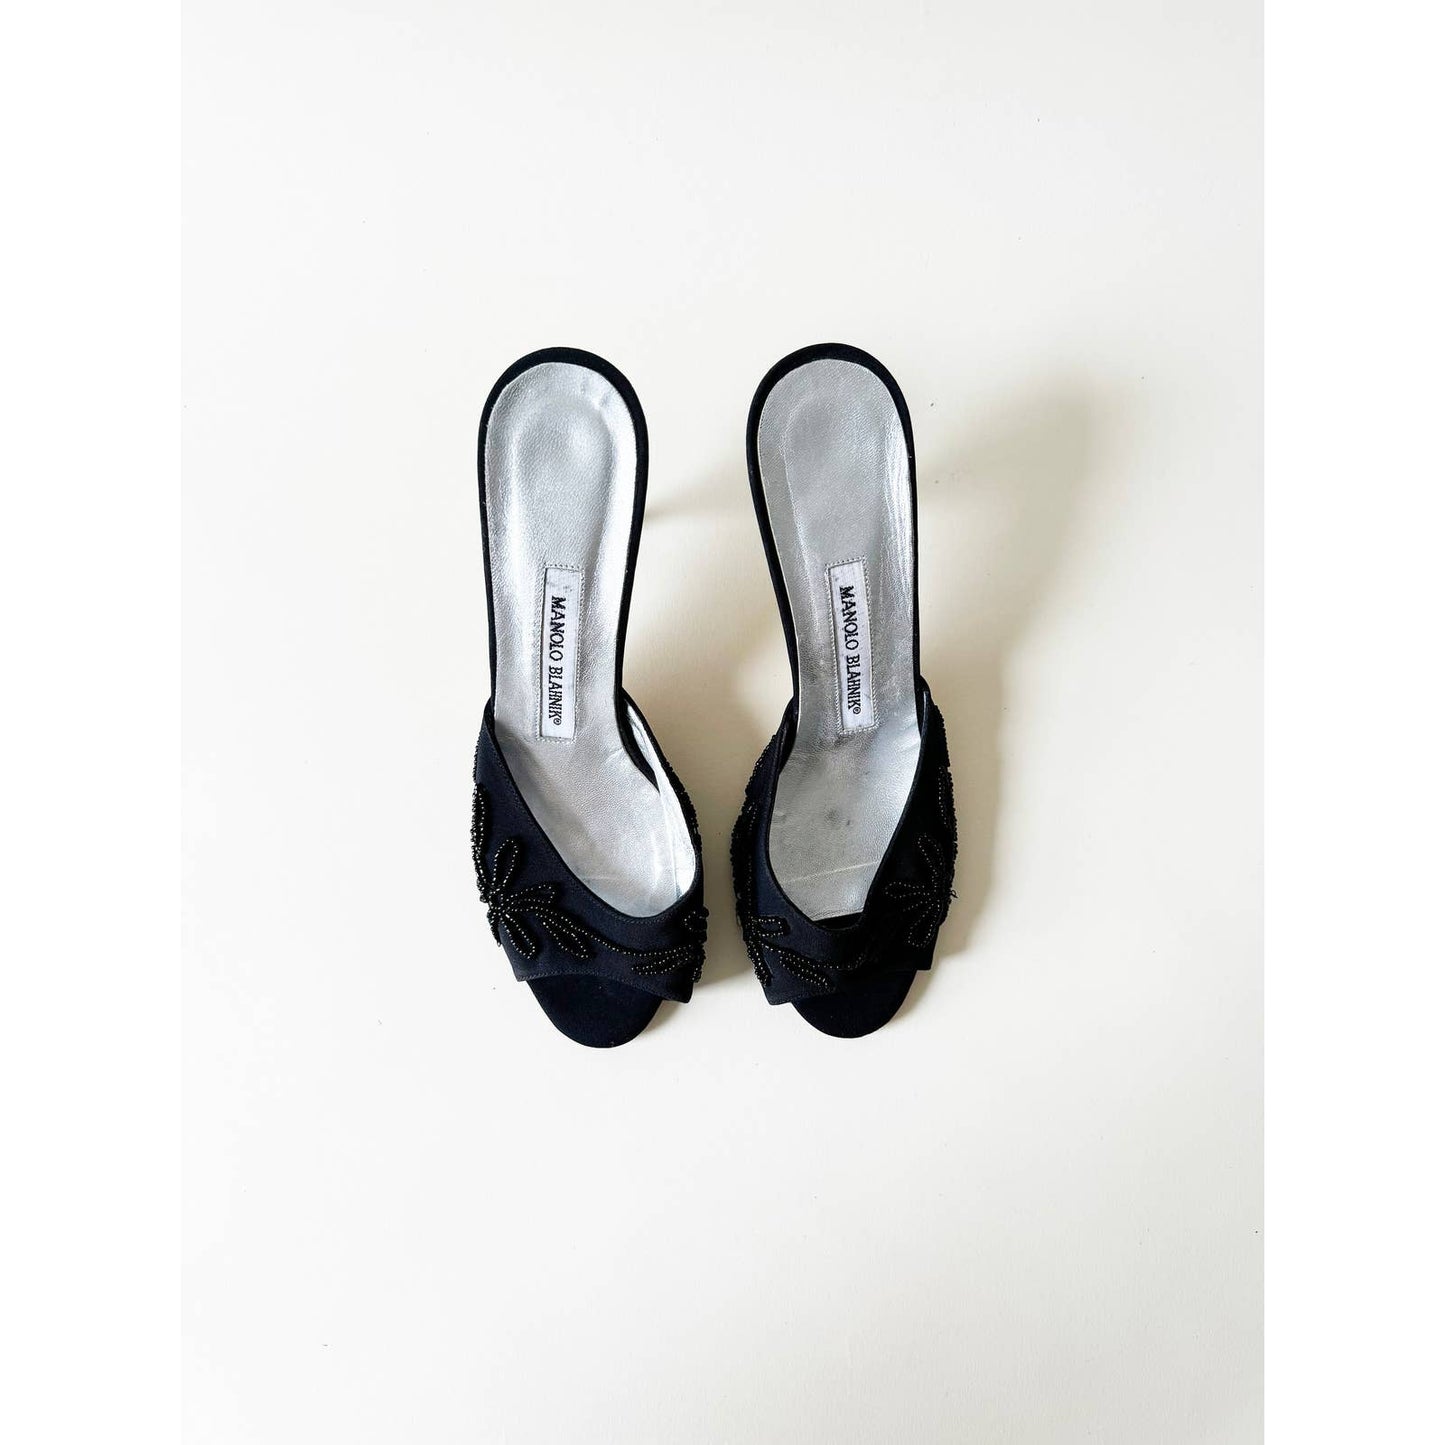 Vintage Manolo Blahnik Beaded Open Toe Heels | Size 6.5 US 37 IT